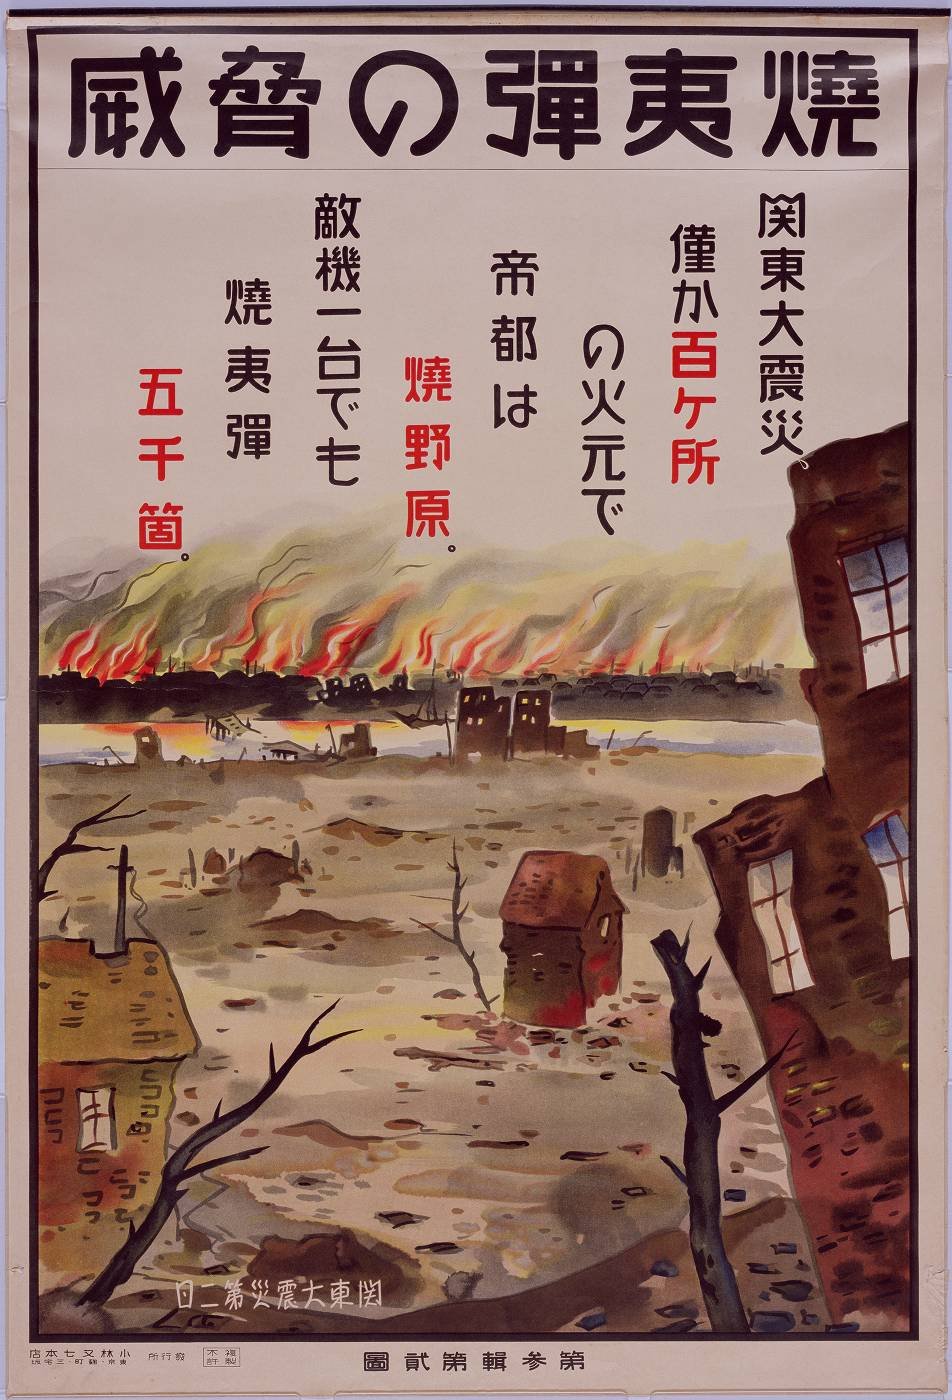 ボード「Vintage Japanese Posters」のピン